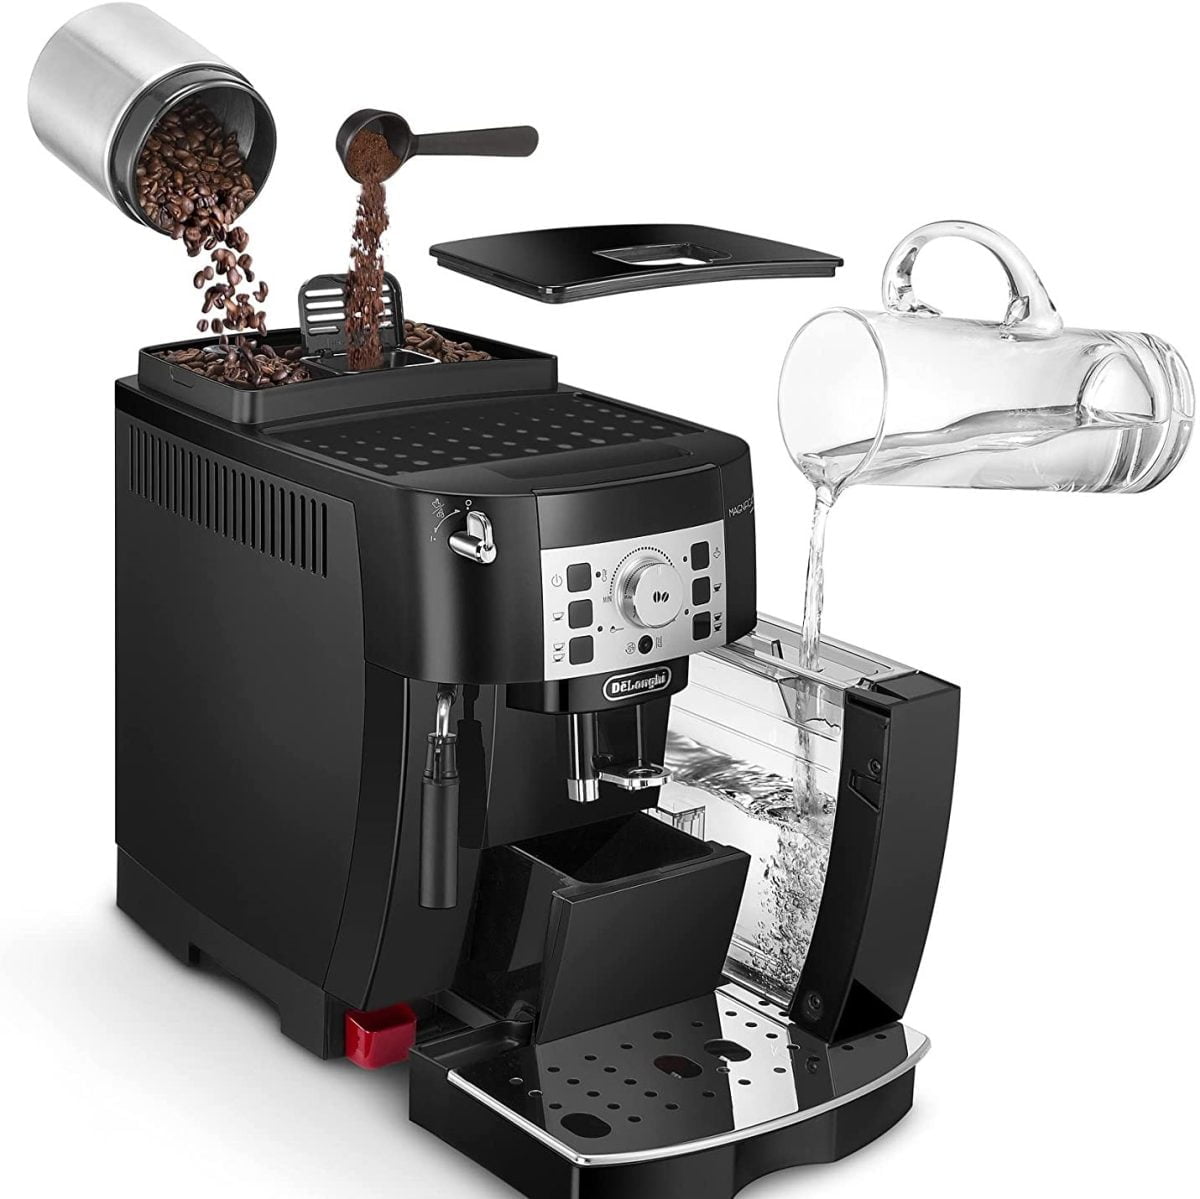 Delonghi &Lt;H1&Gt;Delonghi Magnifica S Ecam 22.110.B -Black&Lt;/H1&Gt; &Lt;Ul Class=&Quot;A-Unordered-List A-Vertical A-Spacing-Mini&Quot;&Gt; &Lt;Li&Gt;&Lt;Span Class=&Quot;A-List-Item&Quot;&Gt;Fully Automatic Coffee Machines&Lt;/Span&Gt;&Lt;/Li&Gt; &Lt;Li&Gt;&Lt;Span Class=&Quot;A-List-Item&Quot;&Gt;Simple Touch Operation&Lt;/Span&Gt;&Lt;/Li&Gt; &Lt;Li&Gt;&Lt;Span Class=&Quot;A-List-Item&Quot;&Gt;Milk Frother&Lt;/Span&Gt;&Lt;/Li&Gt; &Lt;Li&Gt;&Lt;Span Class=&Quot;A-List-Item&Quot;&Gt;Home Comfort&Lt;/Span&Gt;&Lt;/Li&Gt; &Lt;Li&Gt;&Lt;Span Class=&Quot;A-List-Item&Quot;&Gt;Easy To Clean&Lt;/Span&Gt;&Lt;/Li&Gt; &Lt;/Ul&Gt; &Lt;H4&Gt;Warranty : 1 Year (Shipping Not Included)&Lt;/H4&Gt; Delonghi Delonghi Magnifica S Ecam 22.110.B -Black